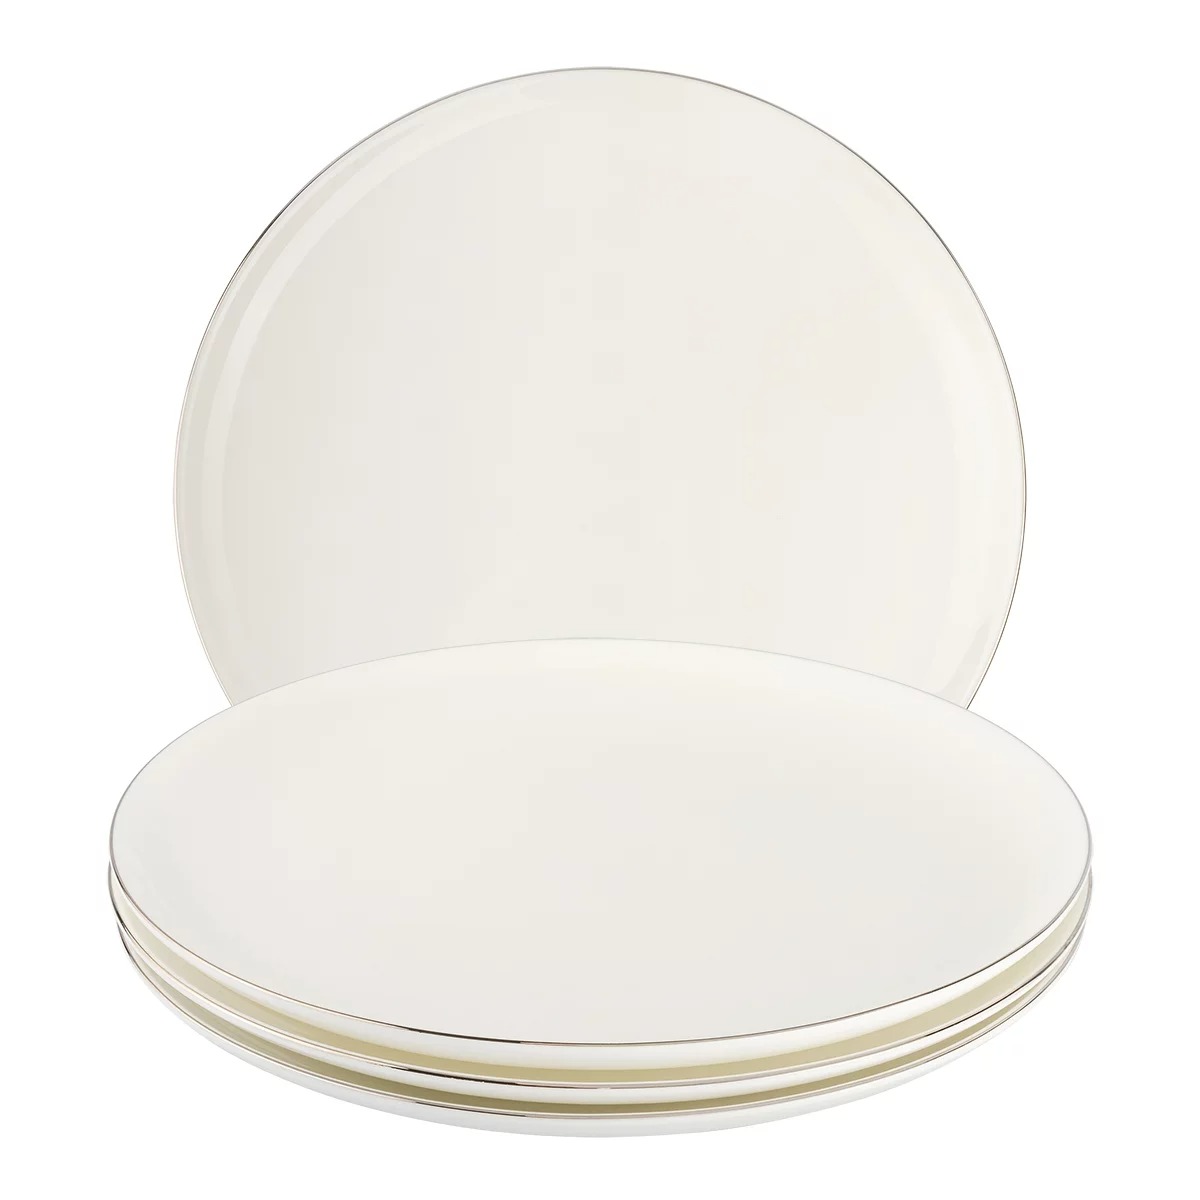 Набор тарелок обеденных Gipfel Platinum 26 см 4 шт набор тарелок обеденных spode наследие 27 см 4 шт